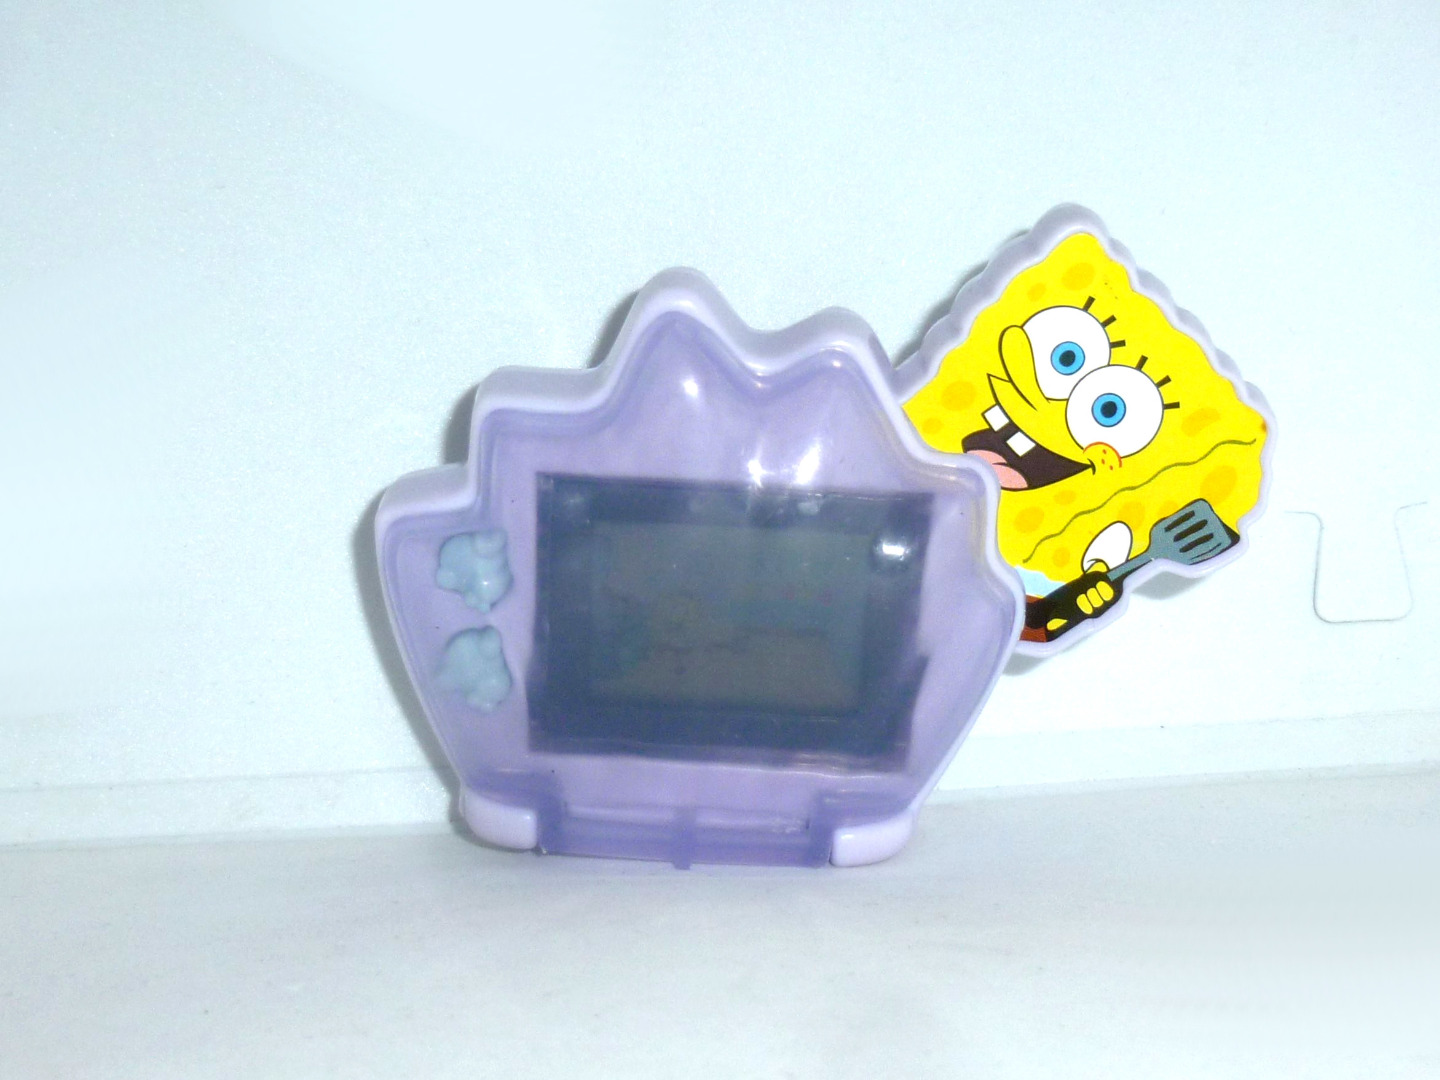 Spongebob - Telespiel - MCDonalds 2007